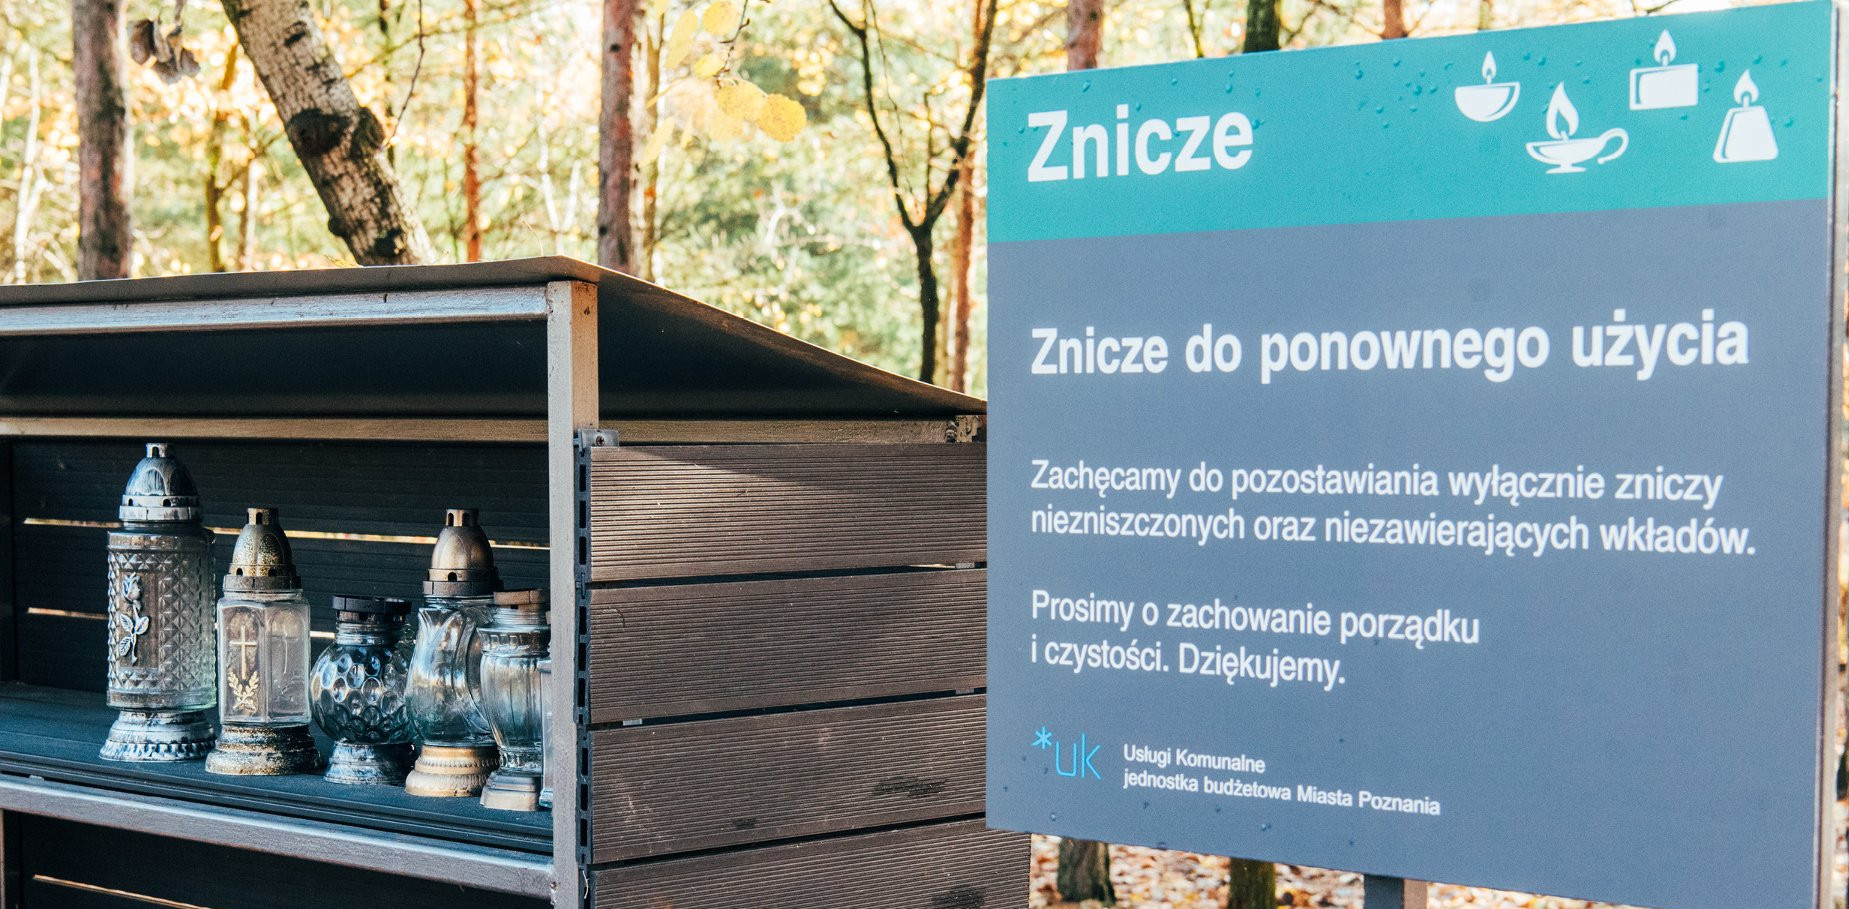 Z myślą o ekologii i ekonomii – na poznańskich cmentarzach można zostawić lub zabrać używany znicz